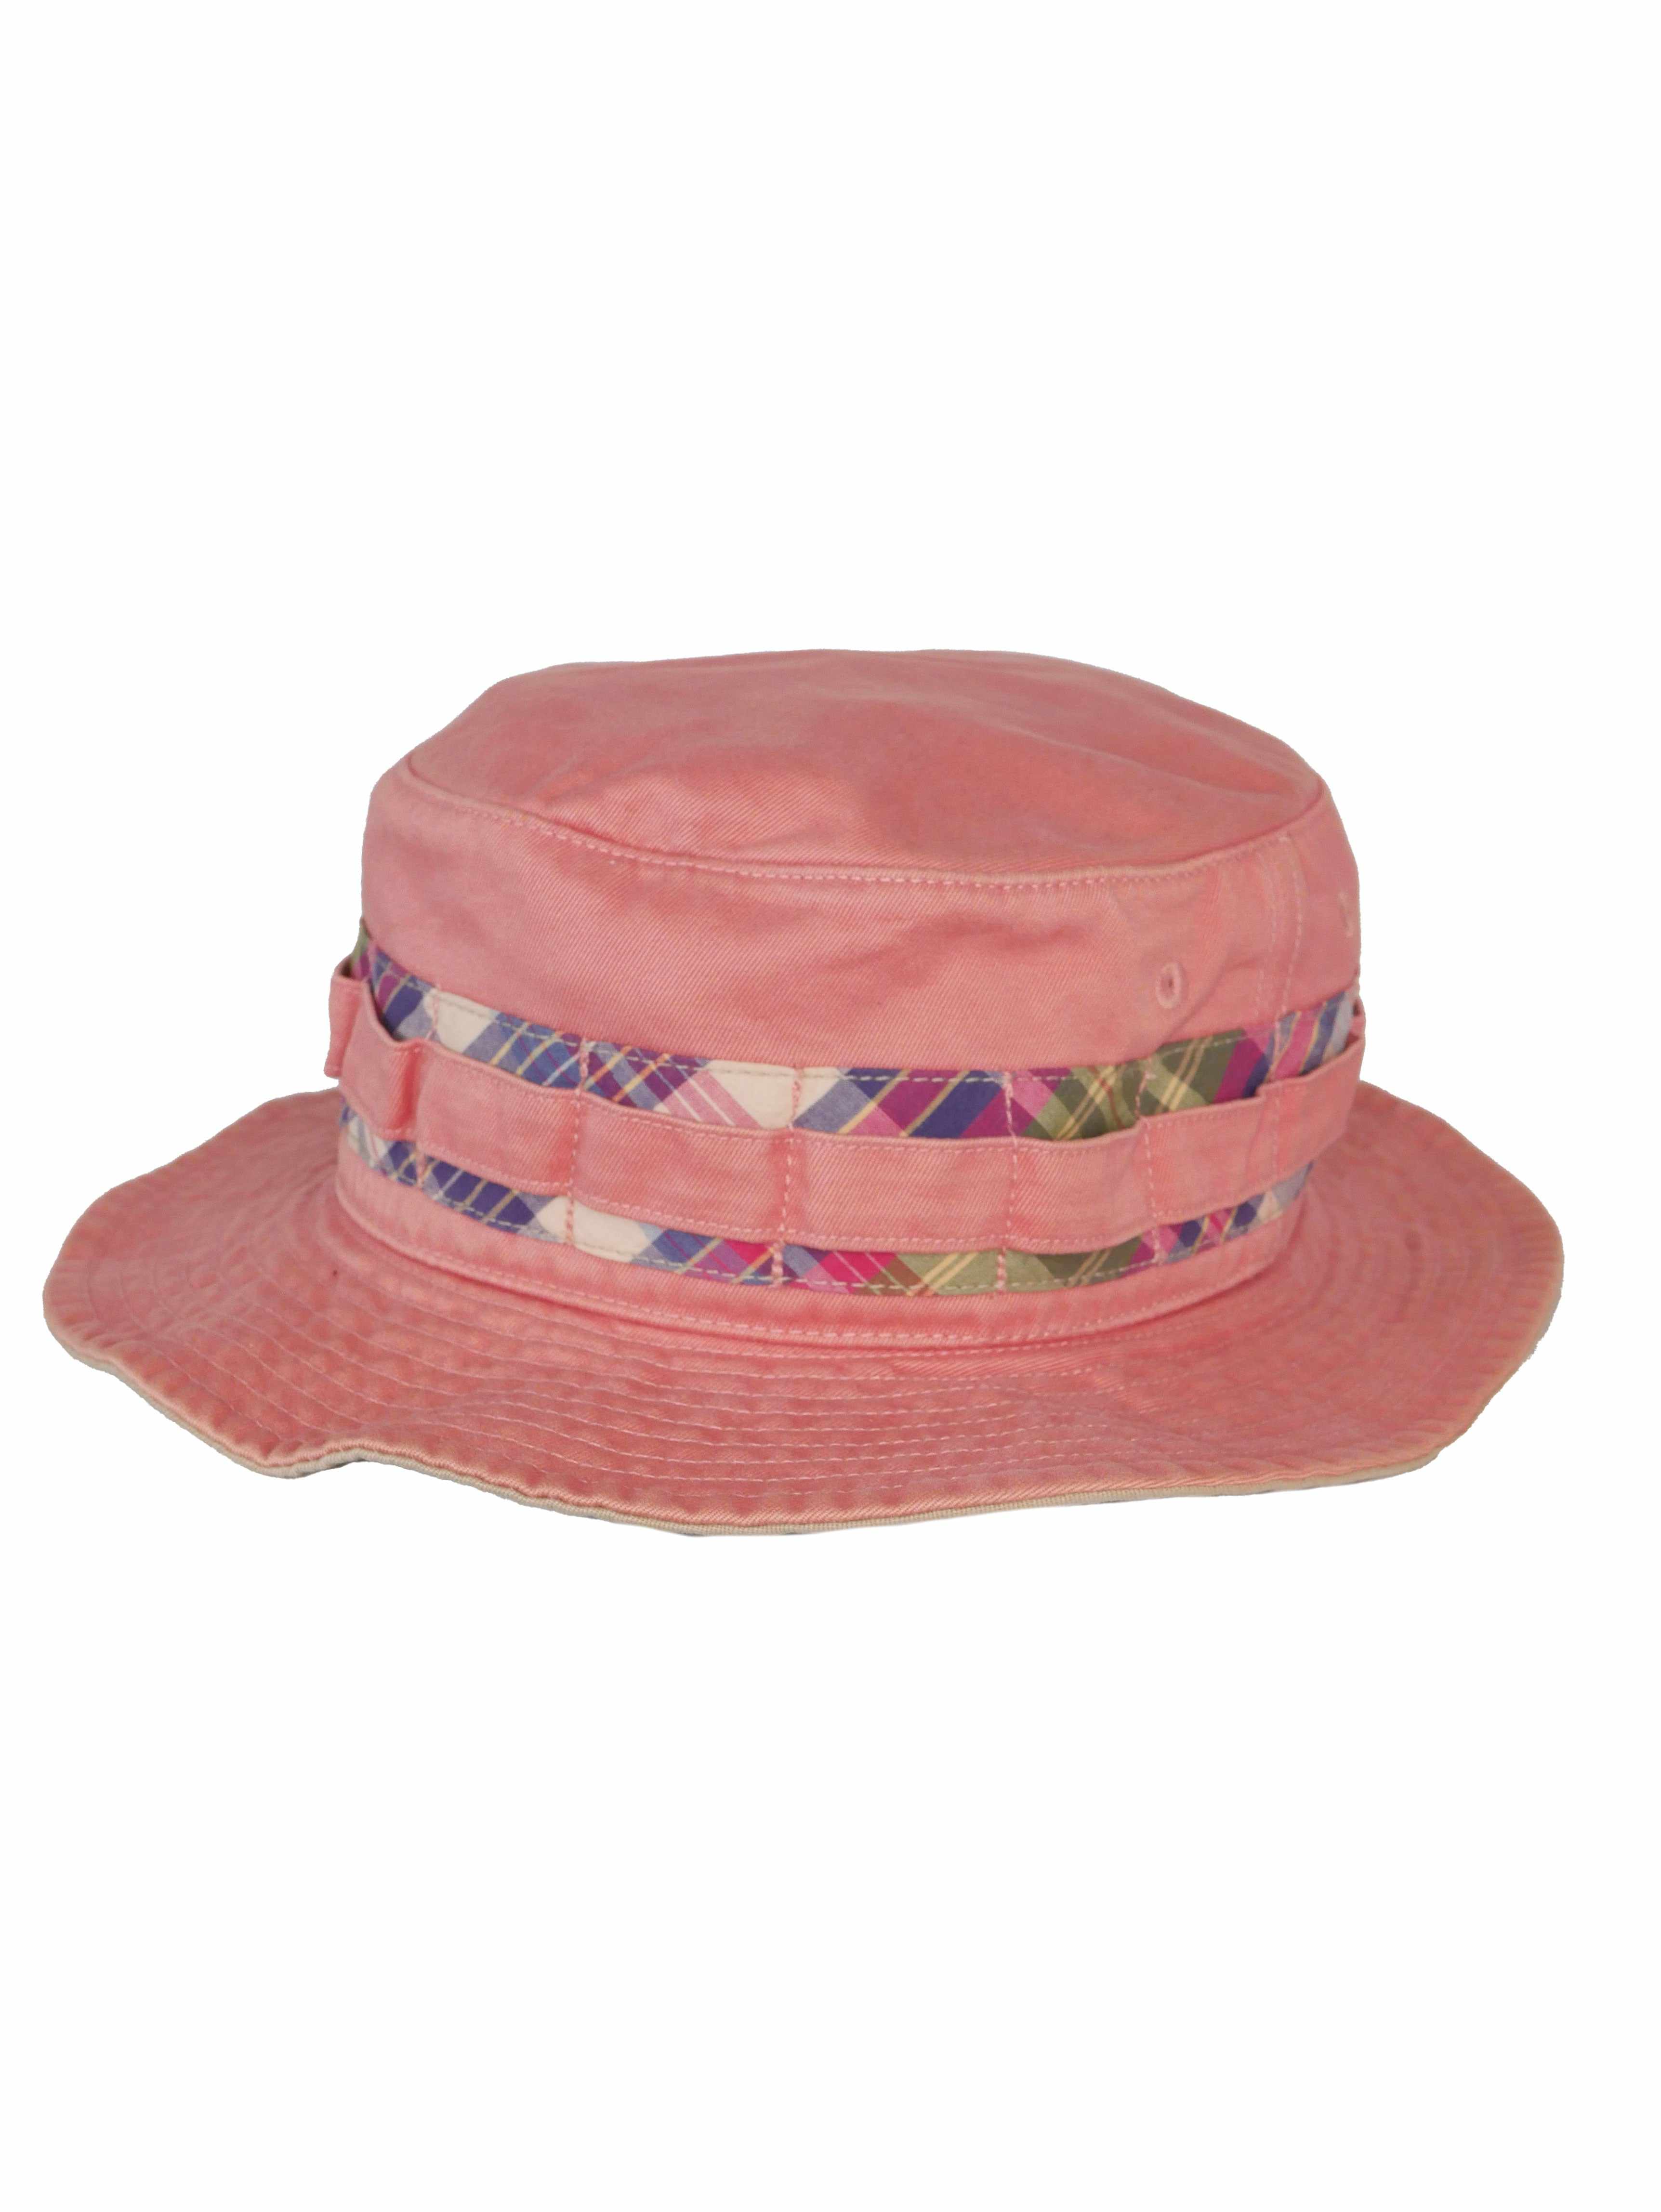 Vintage 90s Ralph Lauren Fishing Bucket Hat (M)